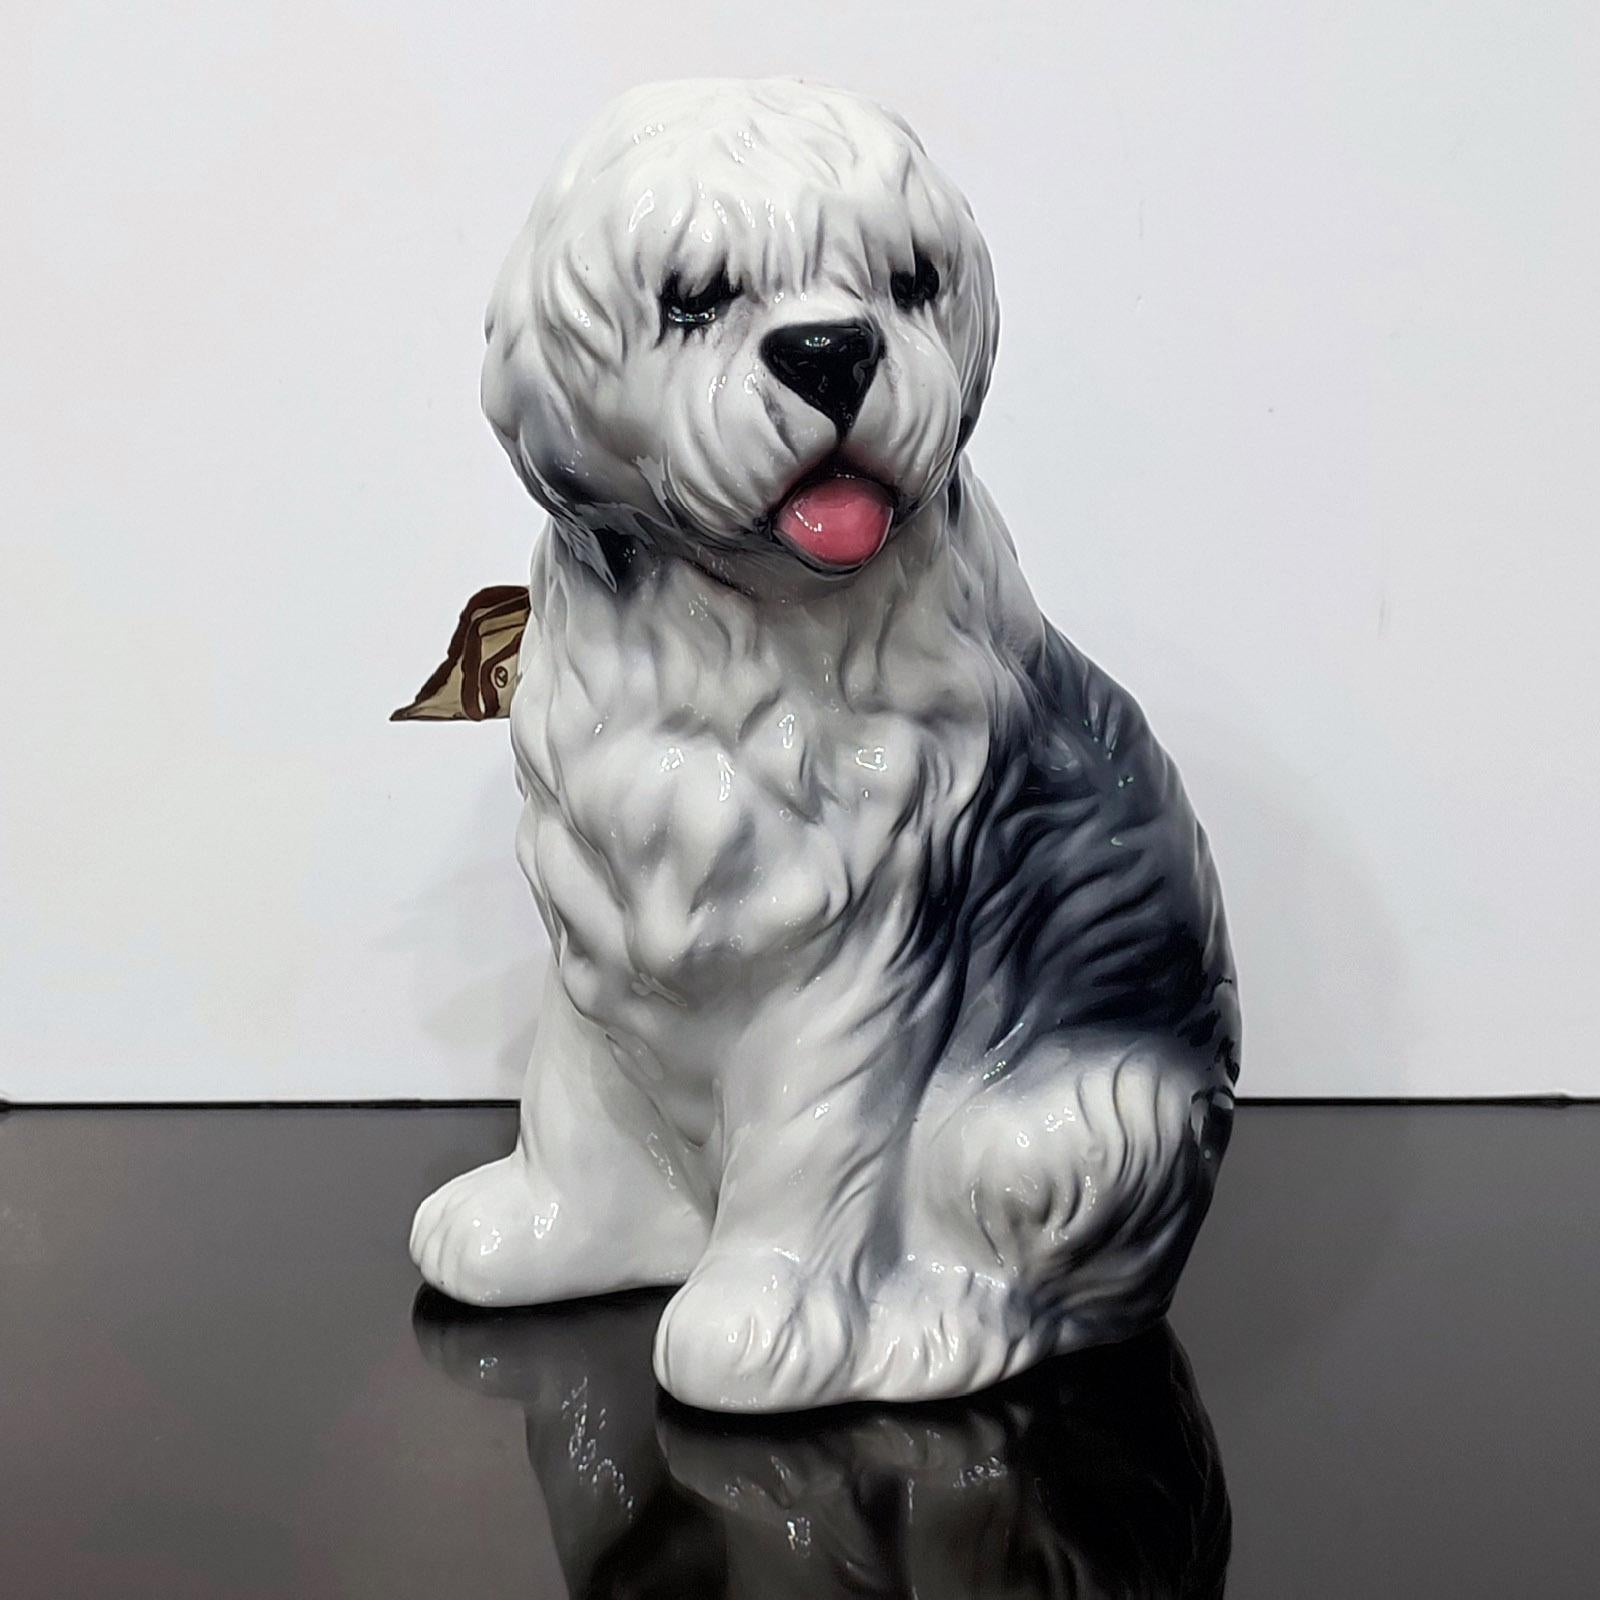 Magnifique figurine en porcelaine peinte à la main d'un vieux chien de berger anglais, fabriquée par Capodimonte, en Italie.
Fait et peint à la main.
Label/certificat du fabricant d'origine.
Mesure : 30 cm (18,9 in) de haut.
Très bon état, comme